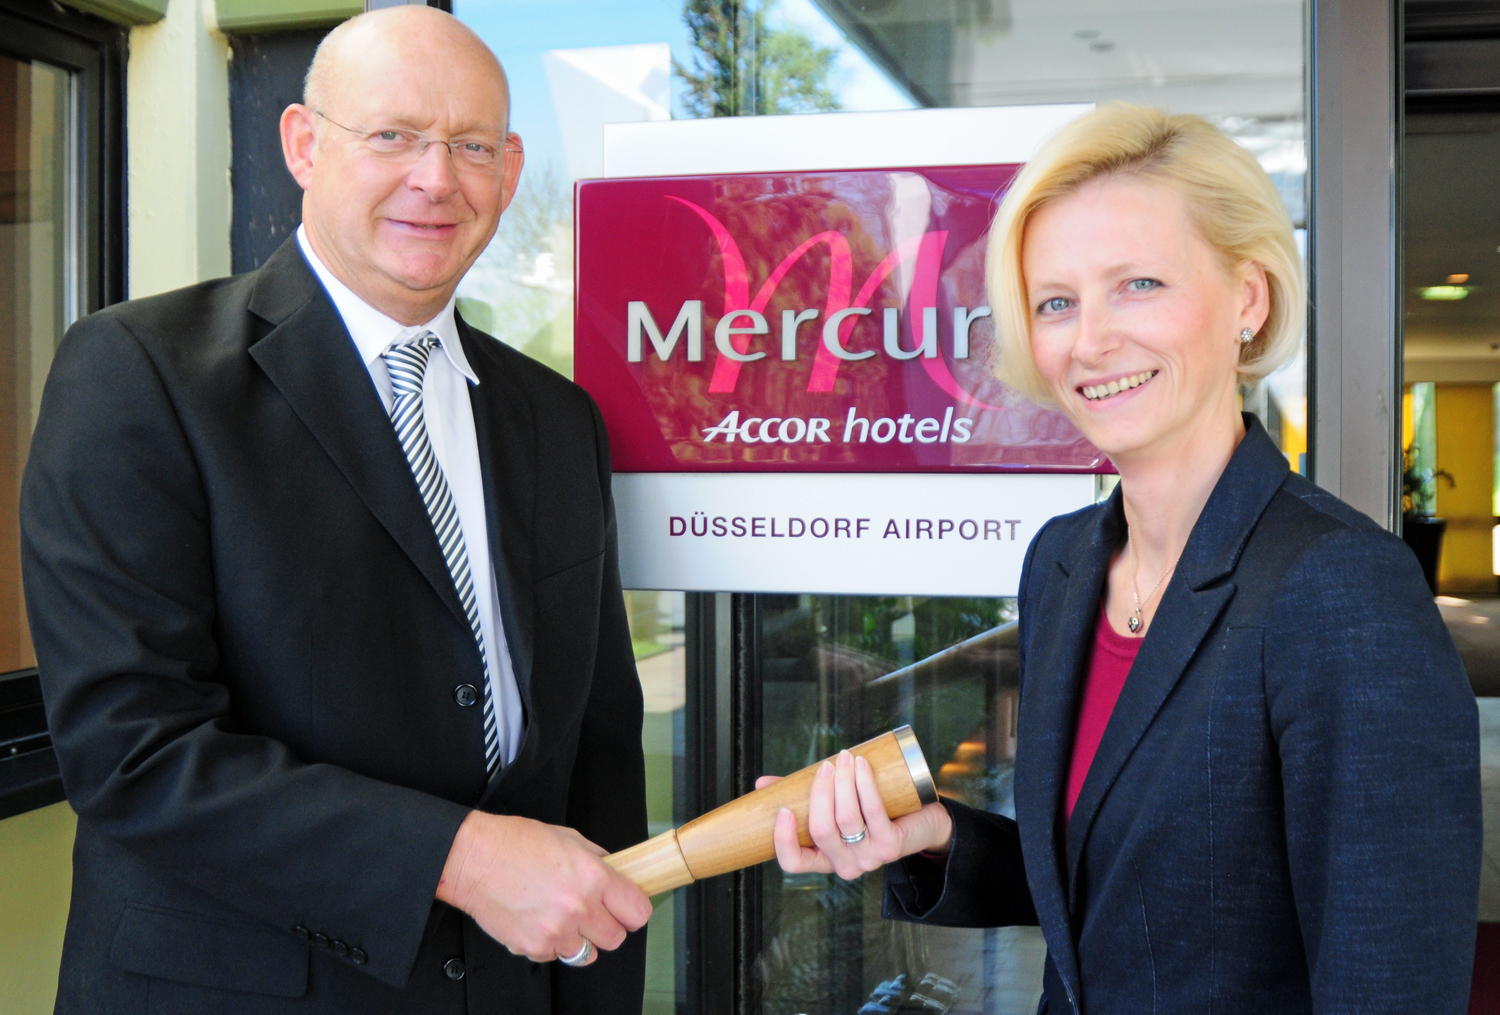 Der bisherige Direktor Jo Dahmen (l.) übergibt der neuen Direktorin Ludmila Zelena (r.) symbolisch mit dem Staffelstab die Verantwortung für das Mercure Hotel Düsseldorf Airport